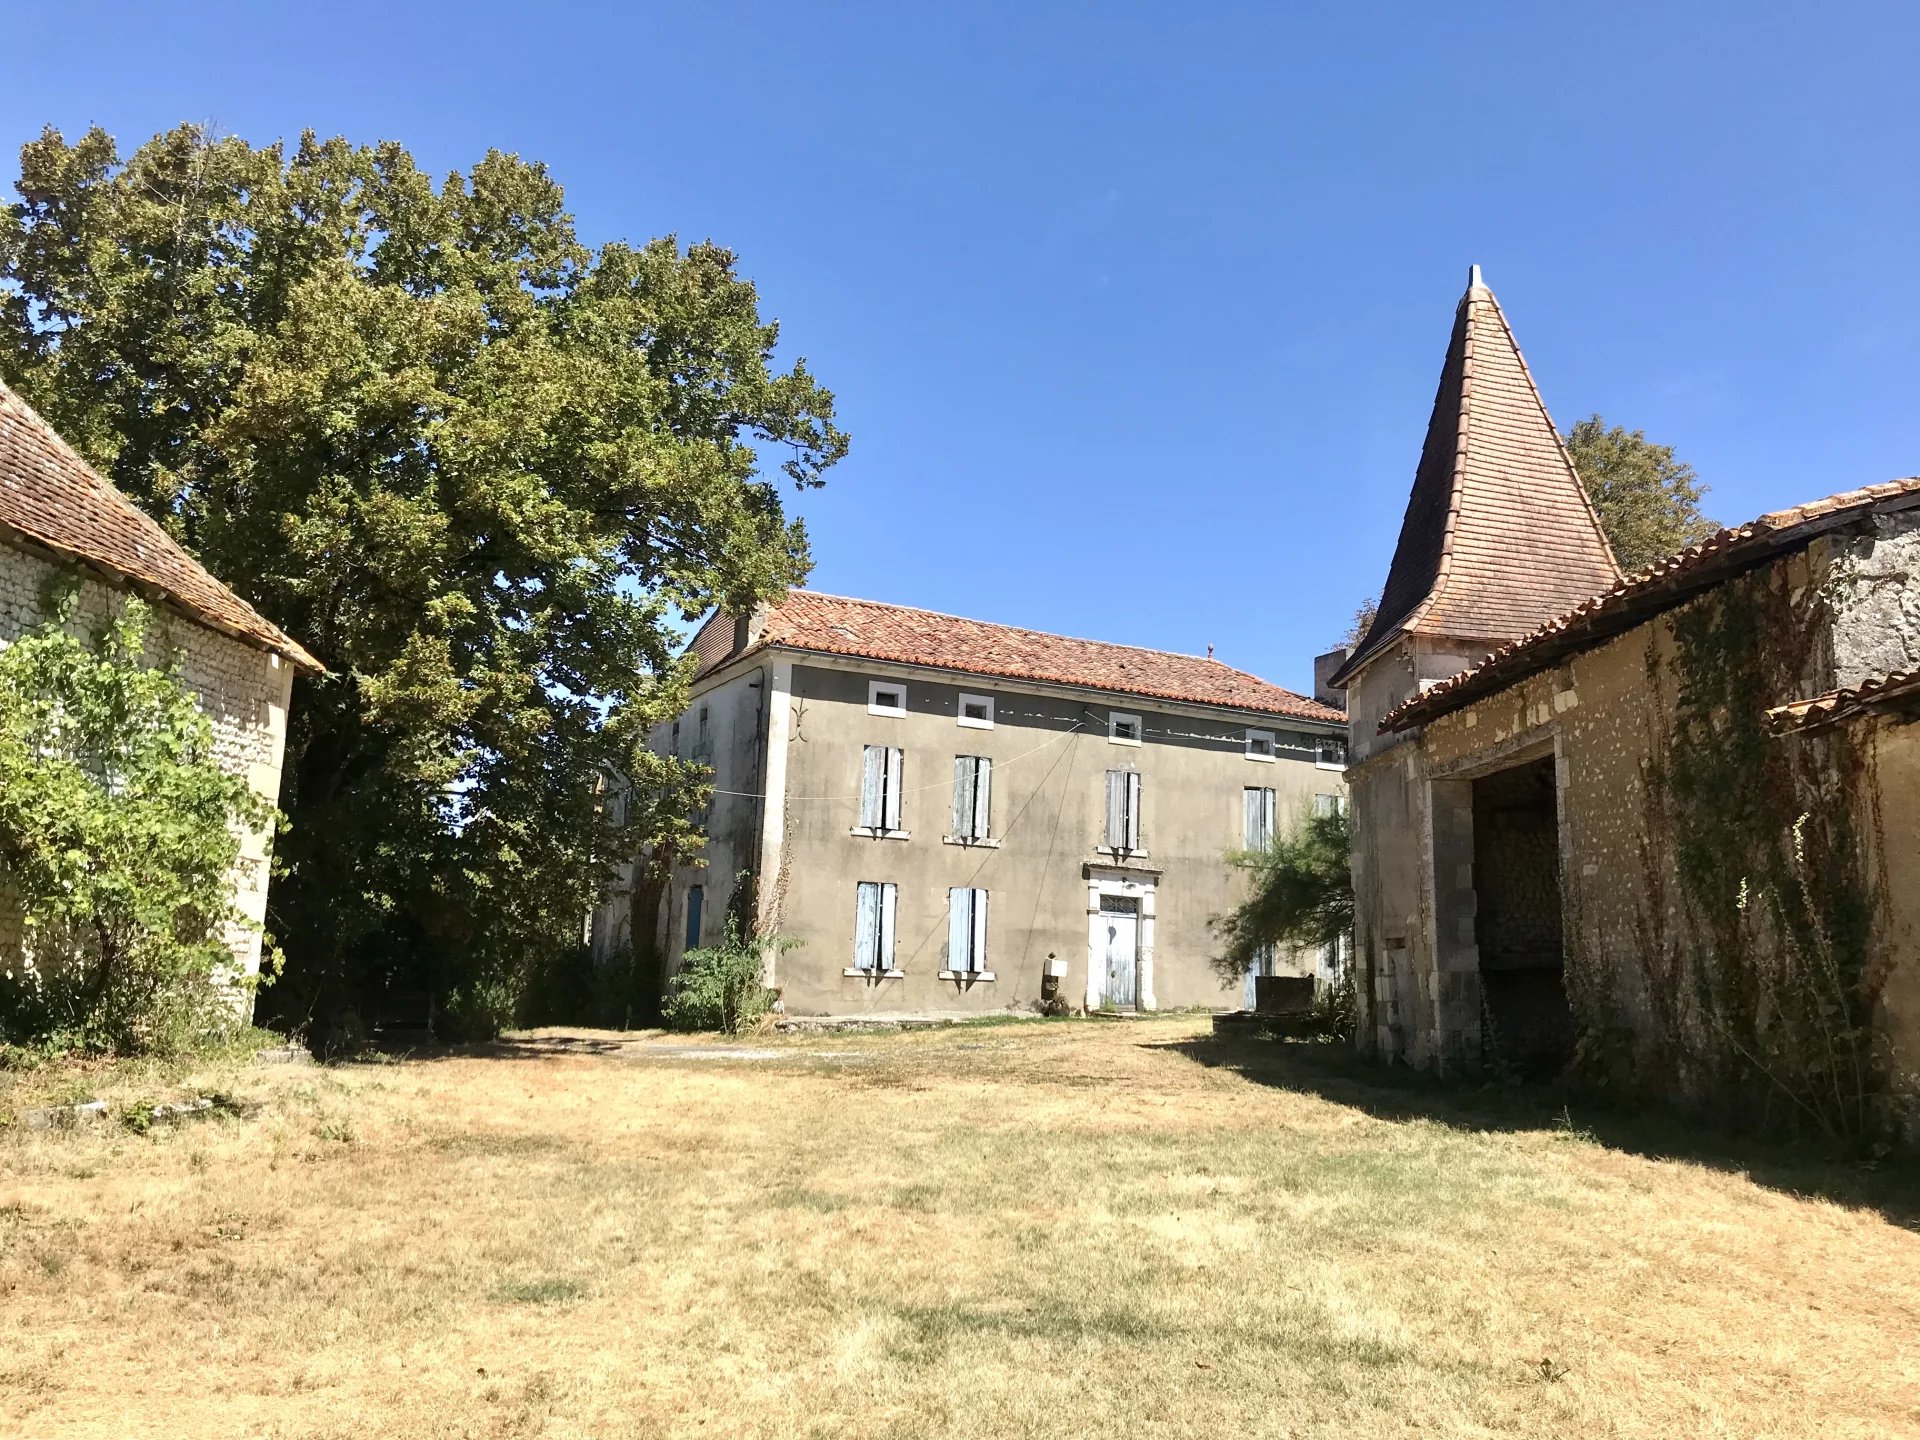 Historic Maison de Maitre, barns and pigeonier